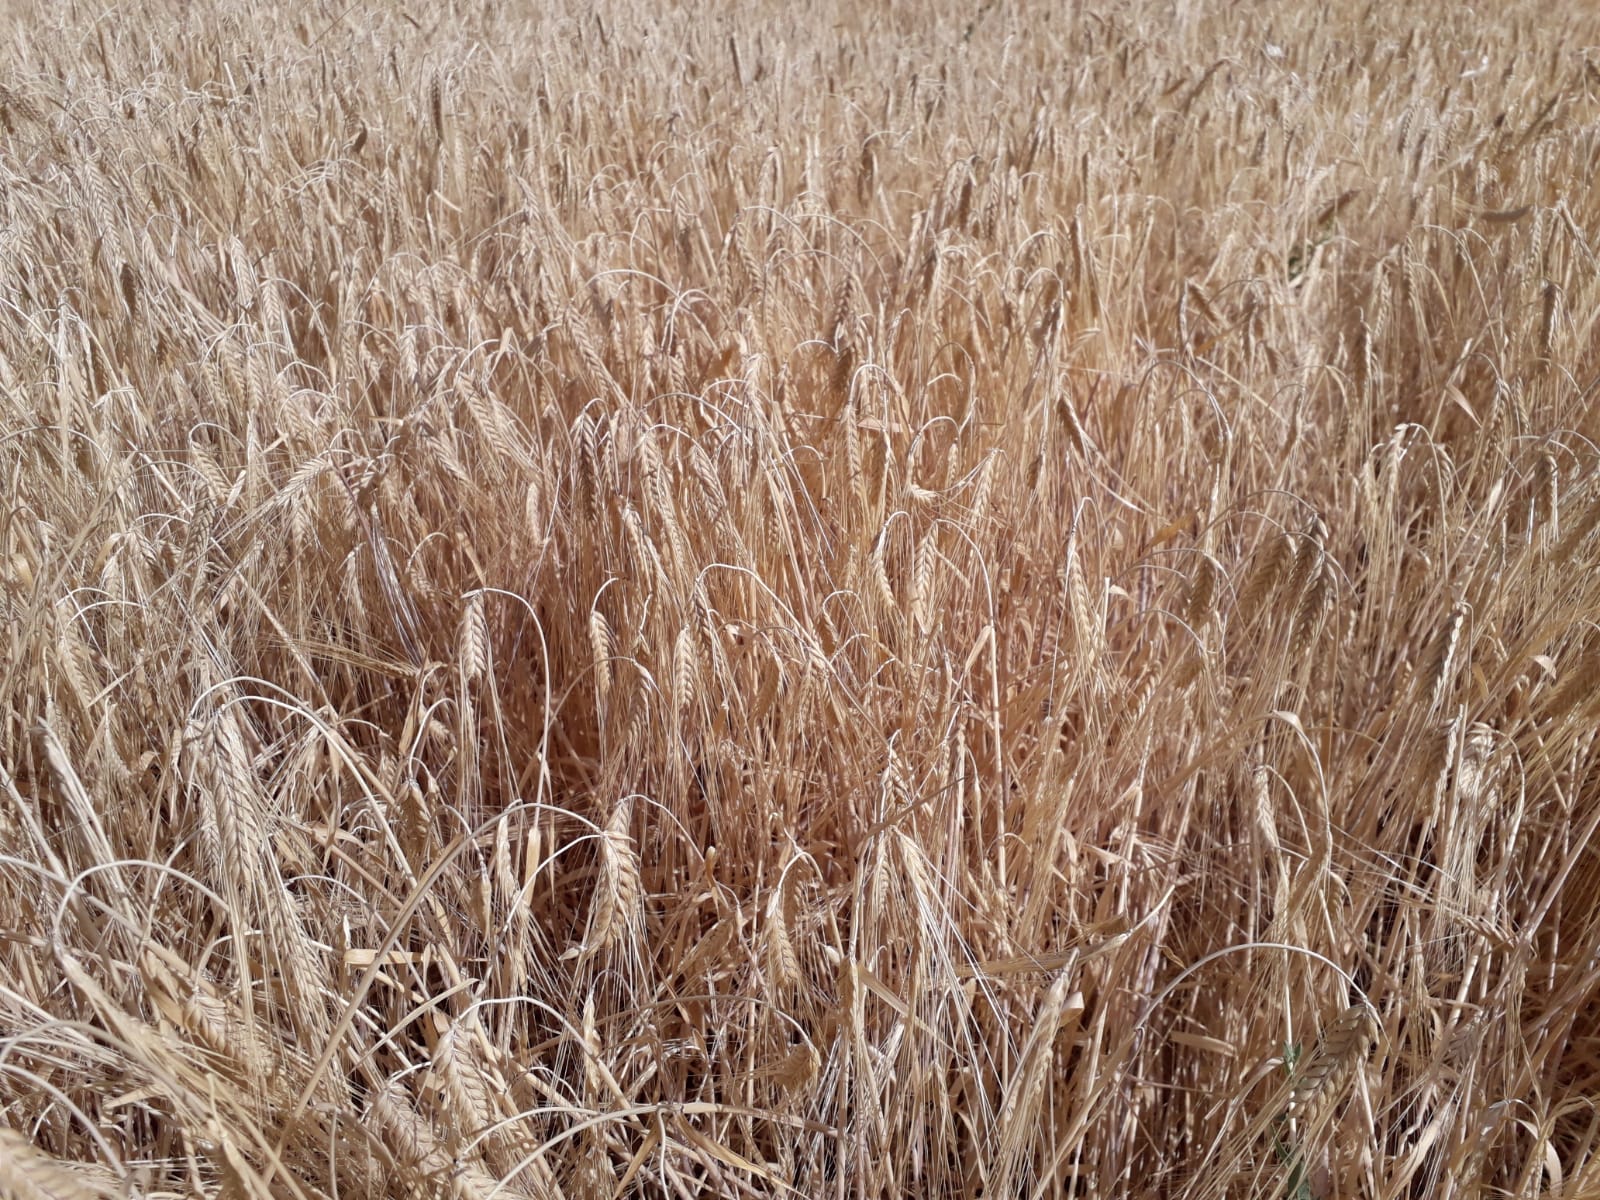 Agroseguro inicia el pago de las indemnizaciones por sequía en cereales